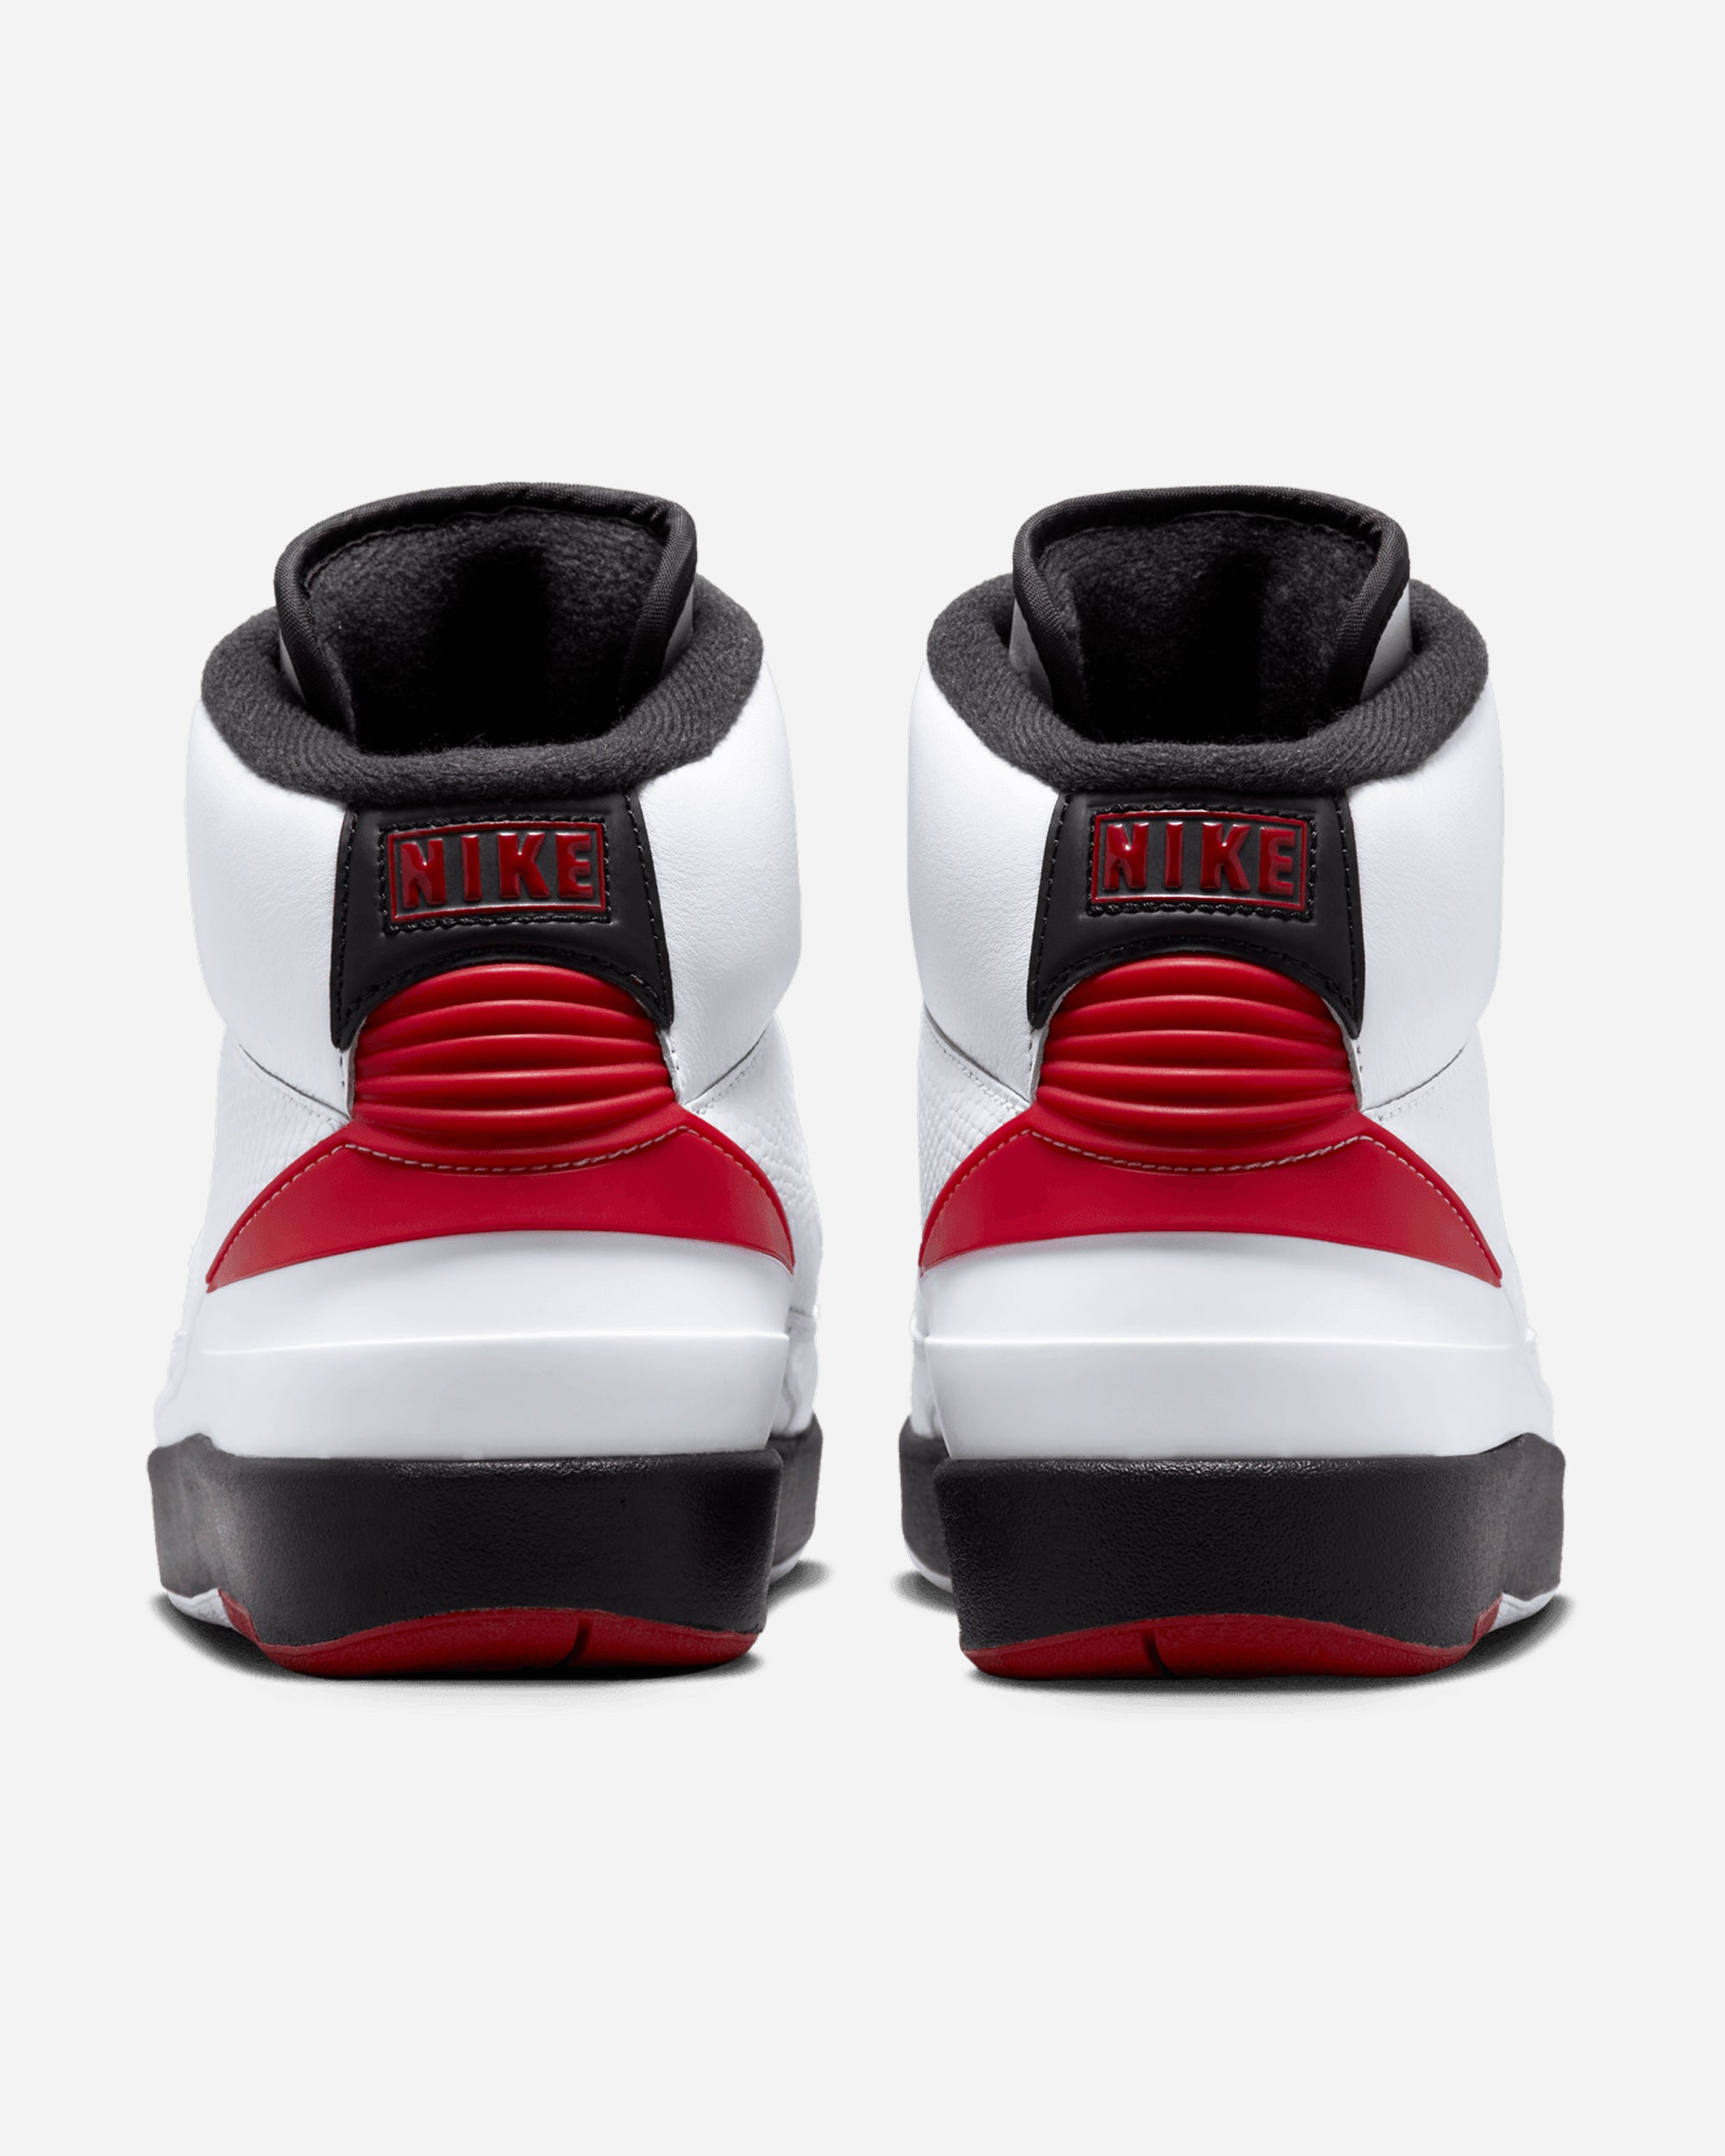 Jordan Brand Air Jordan 2 Retro OG 'Chicago' Womens WHITE/VARSITY RED-BLACK DX4400-106